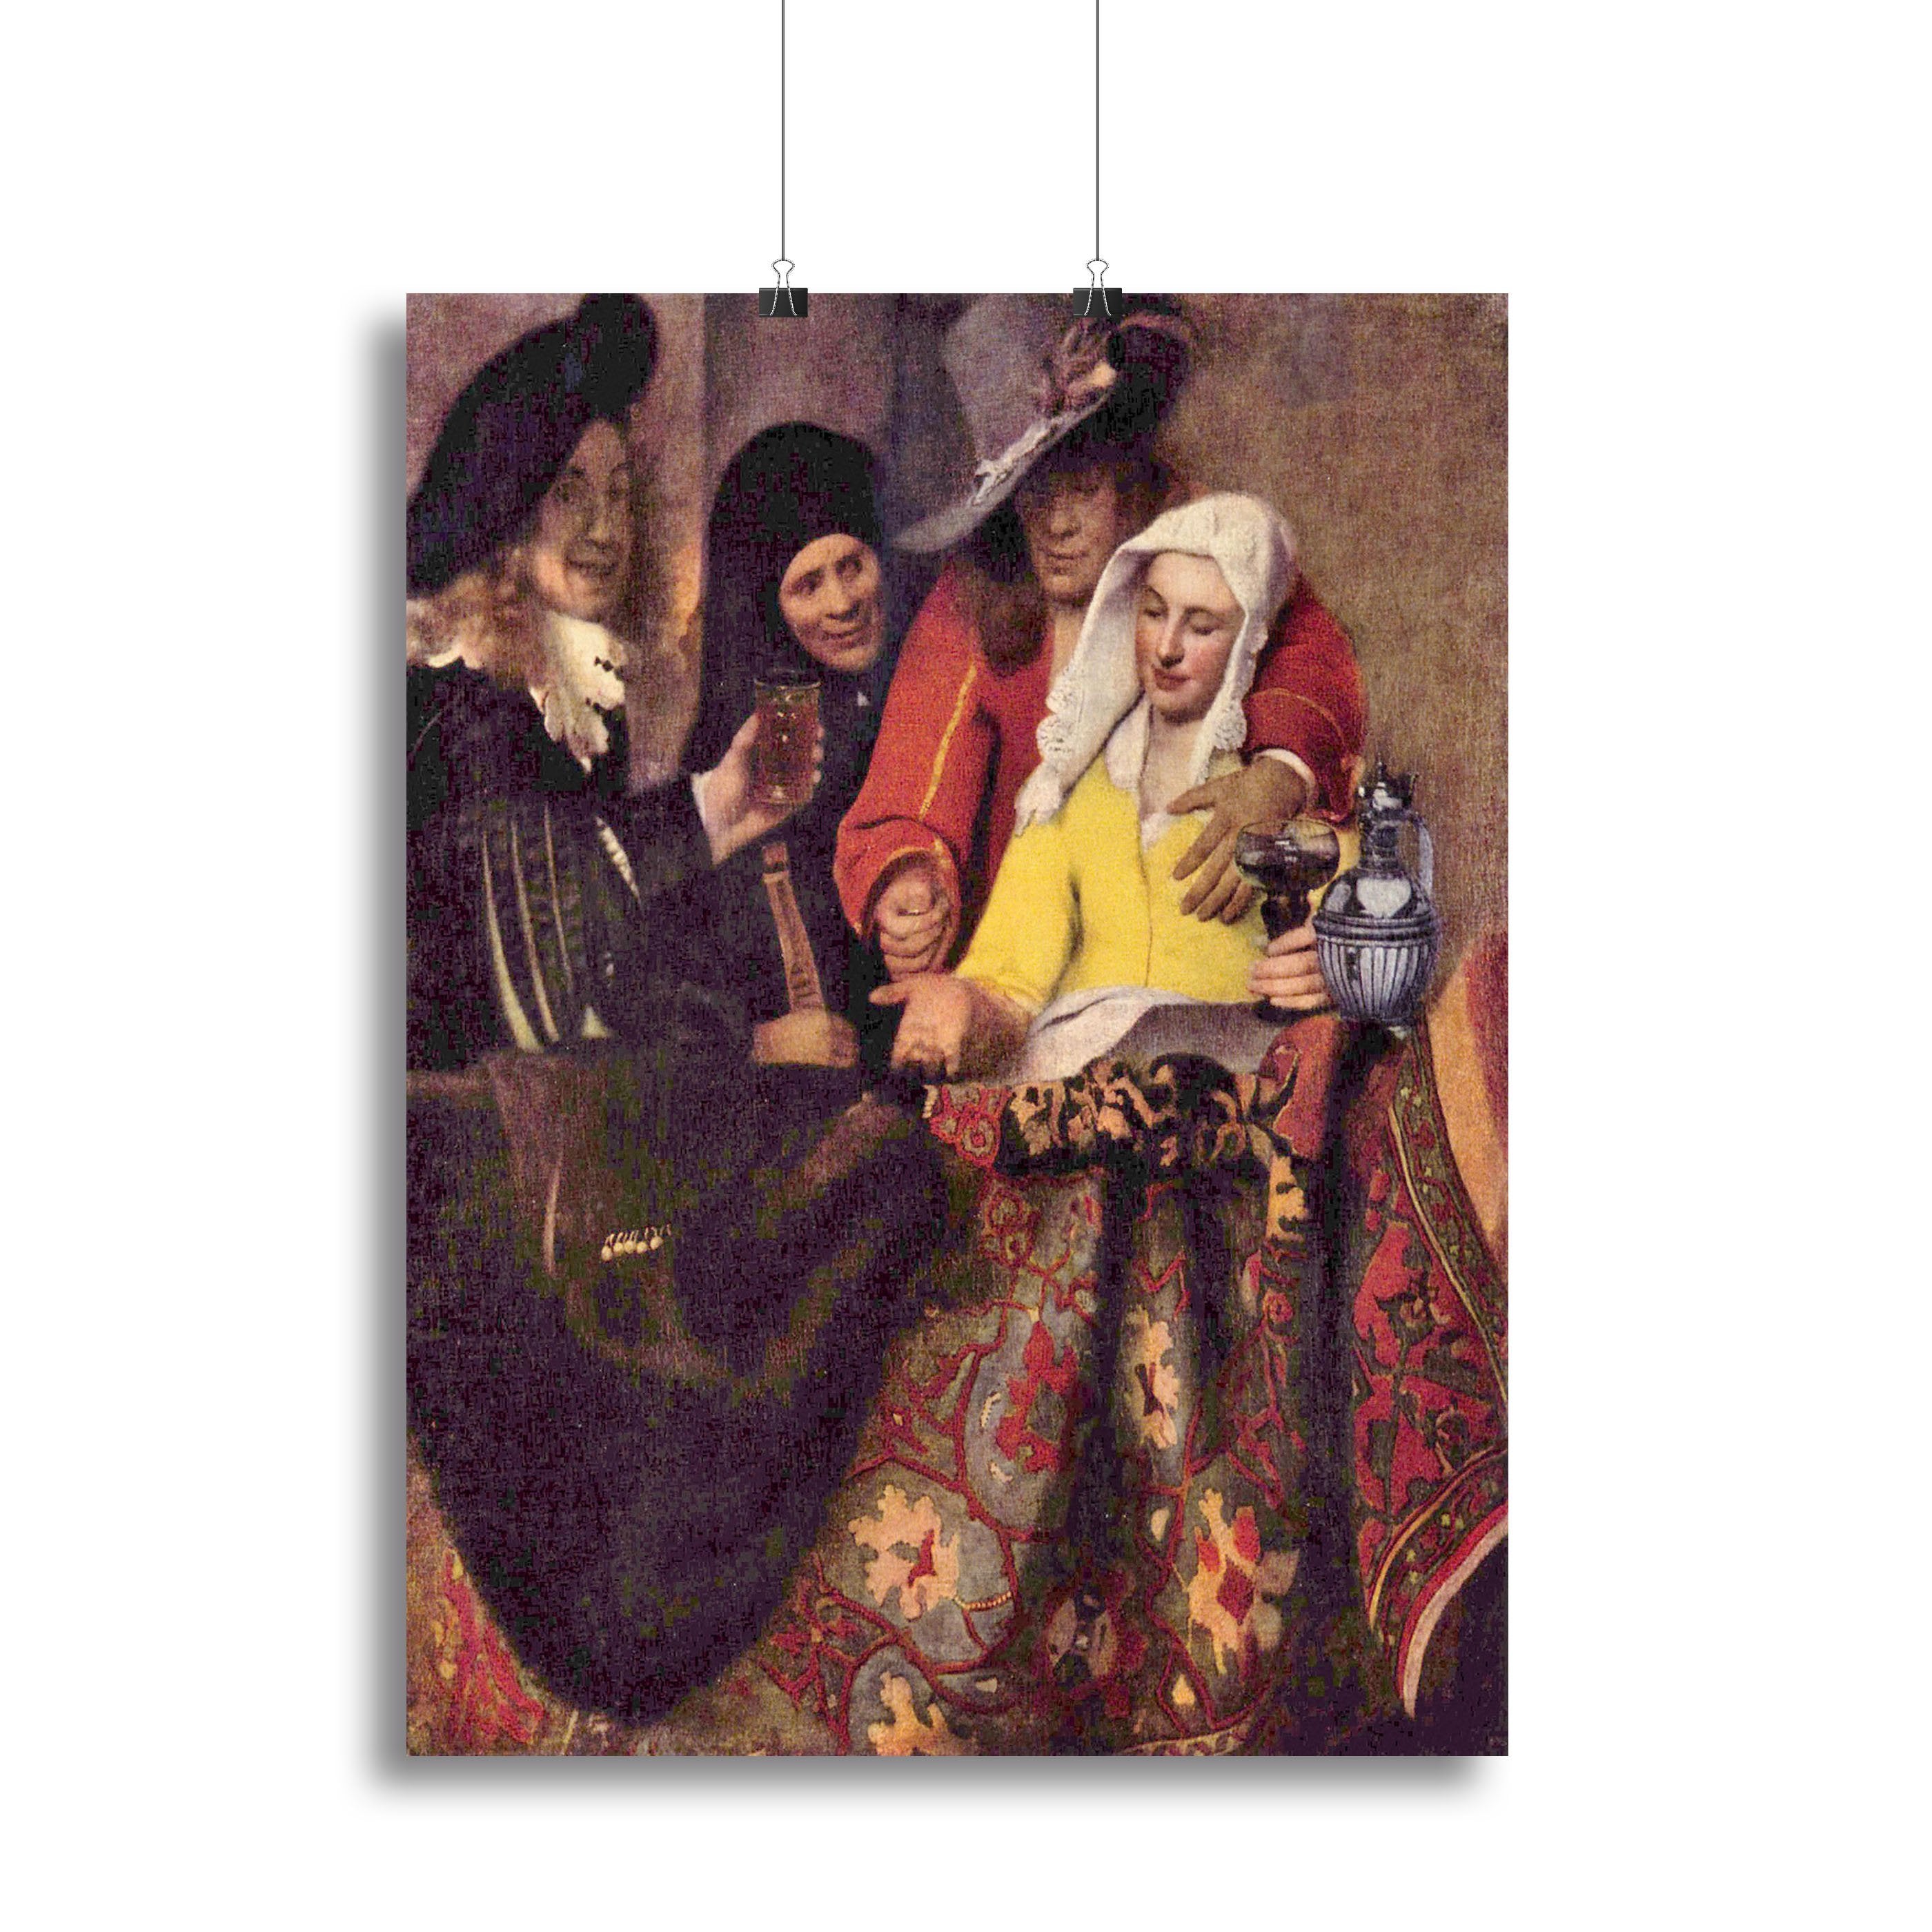 Kupplerin by Vermeer Canvas Print or Poster